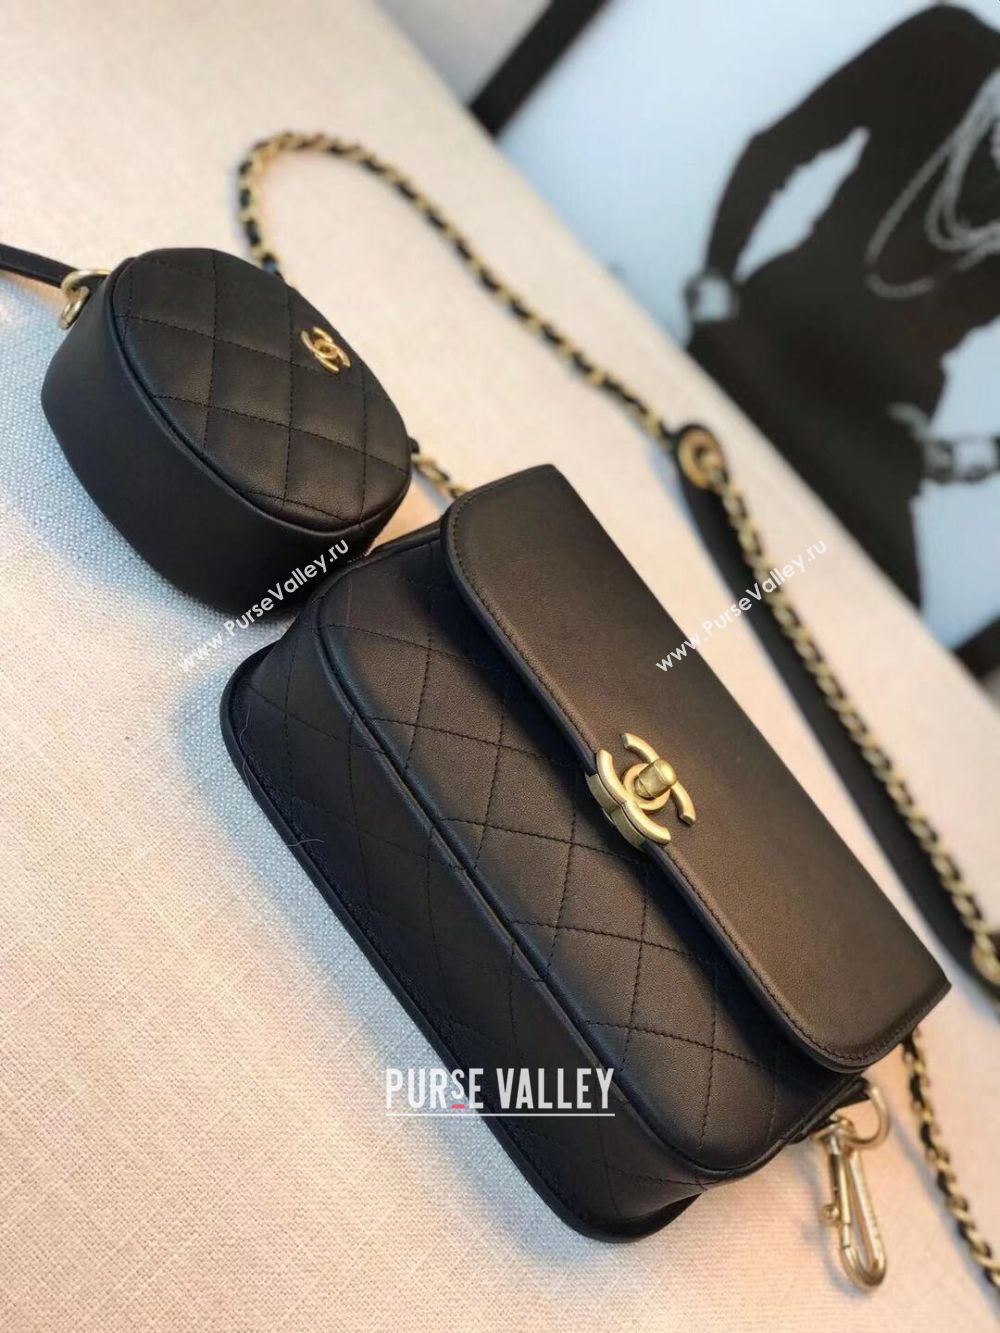 Chanel Original Leather Bag C5787 Black